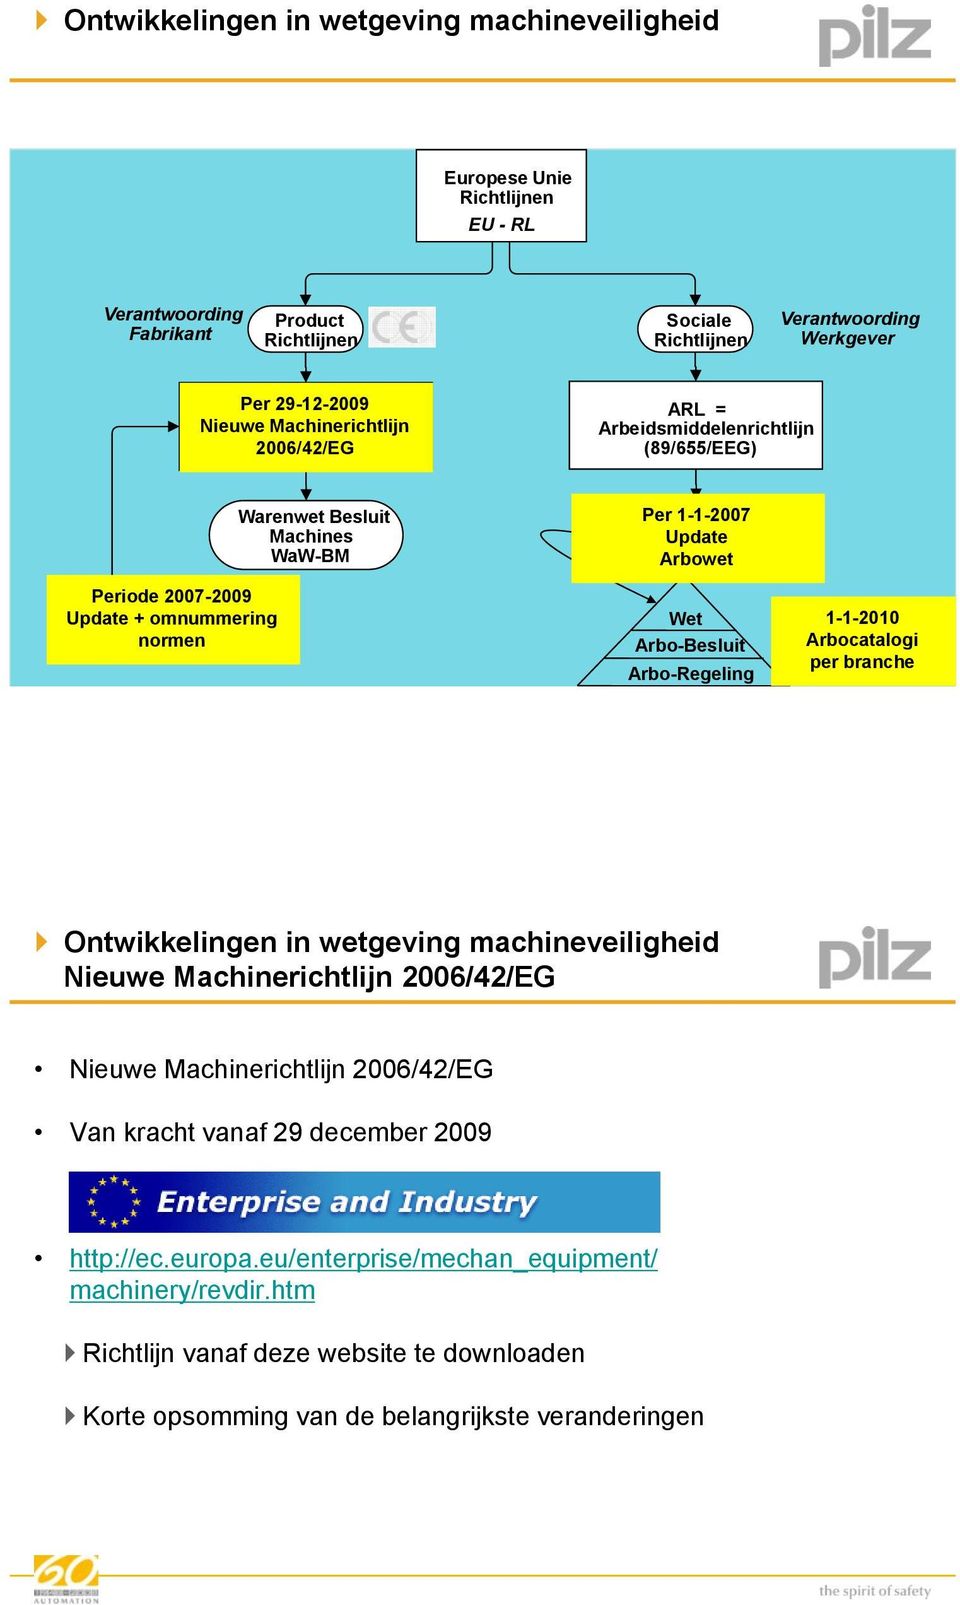 Arbeidsomstandighedenwet Update 1-1-2007 Arbowet Wet Arbo-Besluit Arbo-Regeling 1-1-2010 Arbocatalogi per branche Ontwikkelingen in wetgeving machineveiligheid Nieuwe Machinerichtlijn 2006/42/EG